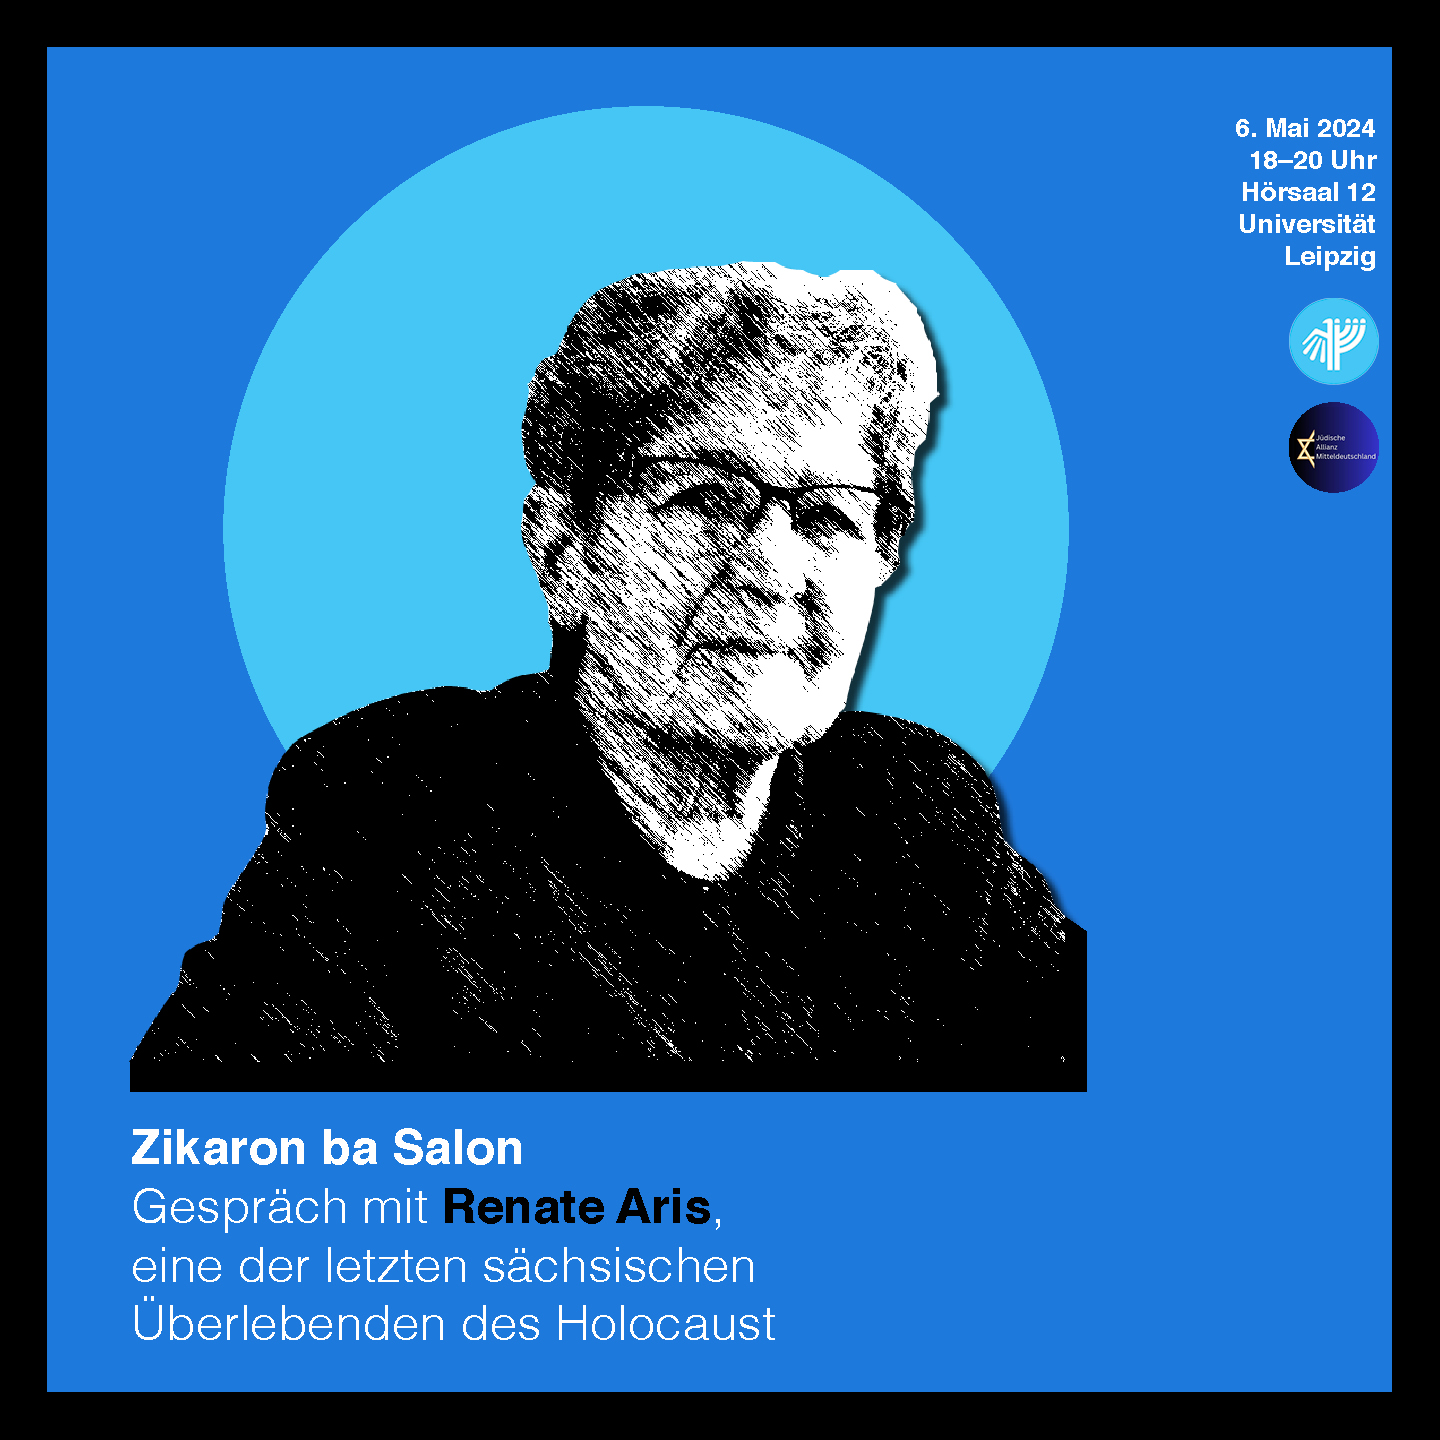 Zikaron ba Salon – Gespräch mit Renate Aris, eine der letzten sächsischen Überlebenden des Holocaust